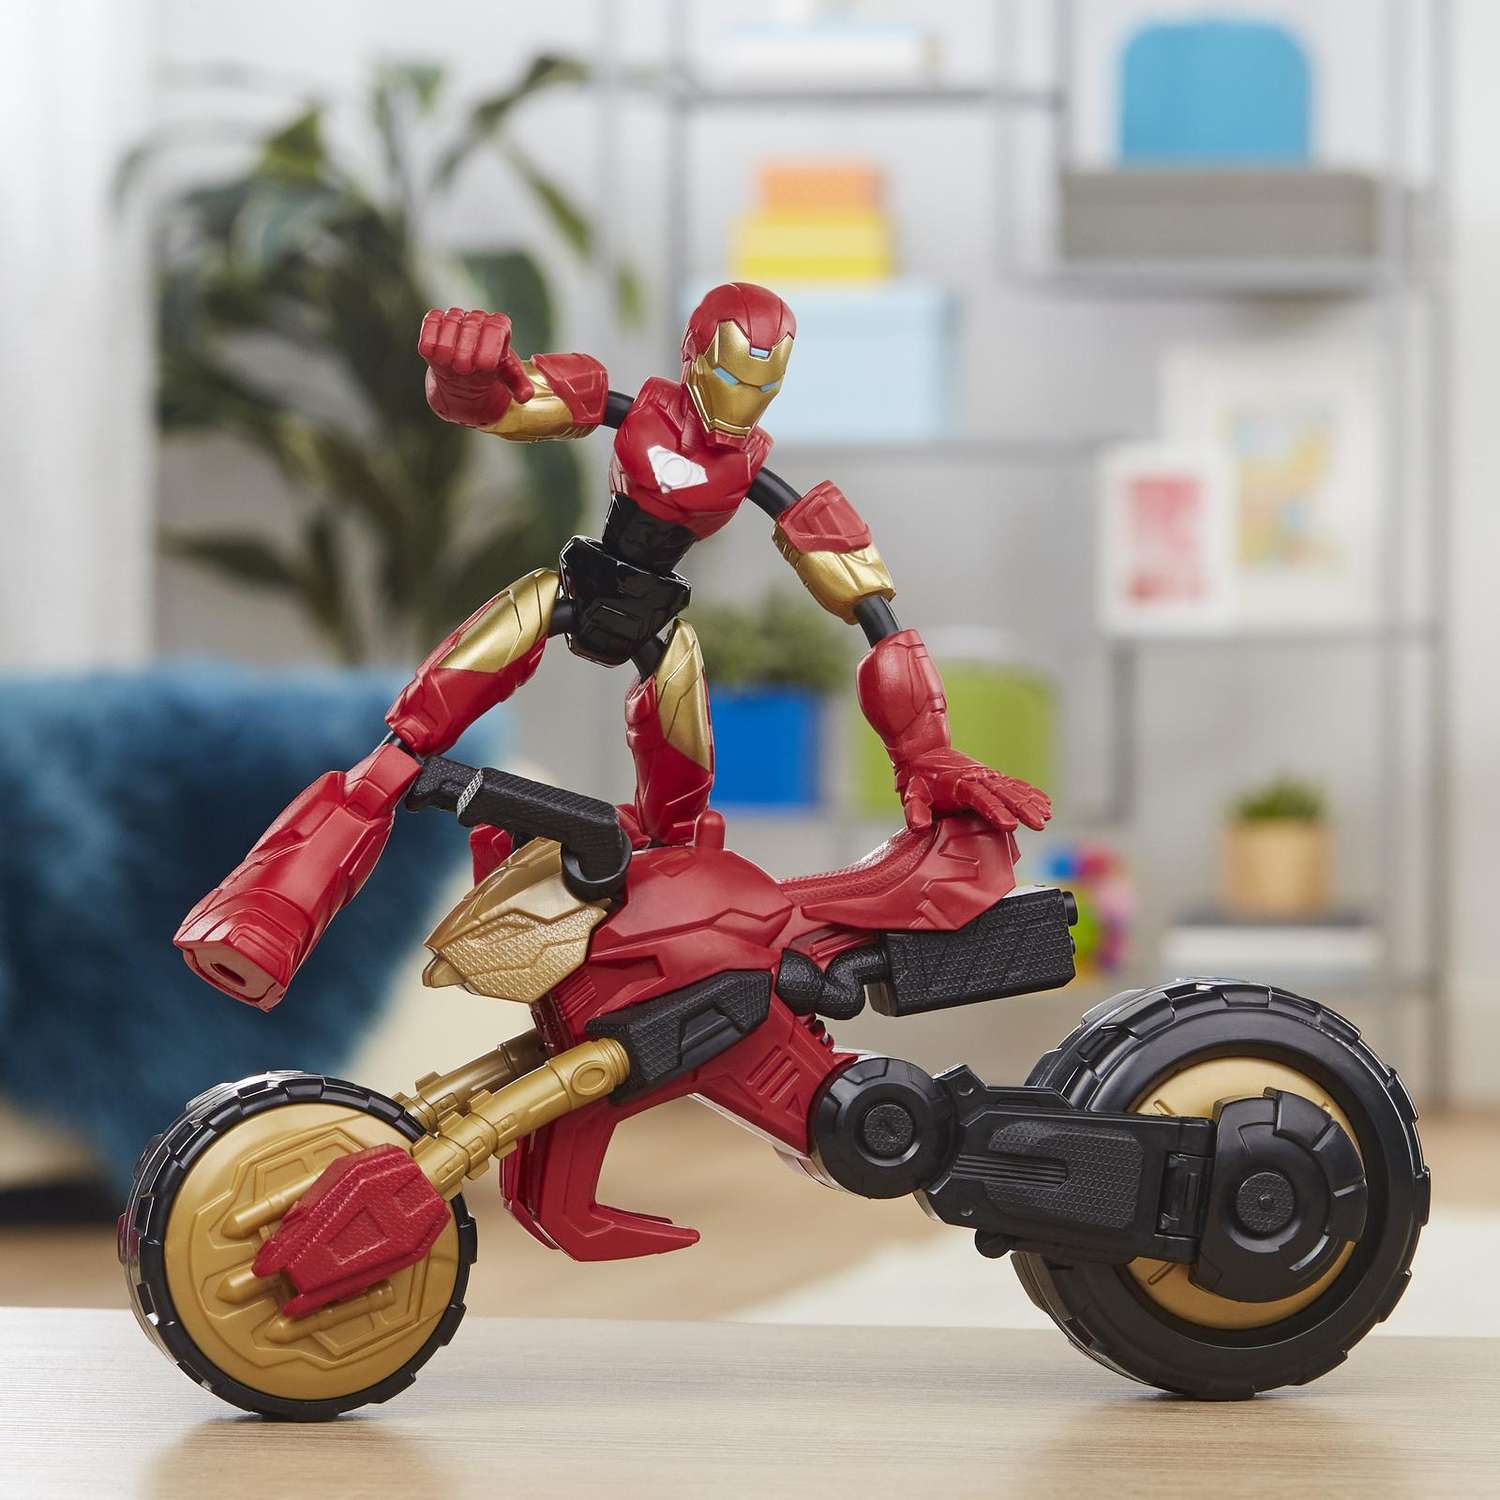 Набор игровой Hasbro (Marvel) Бенди Железный человек на мотоцикле F02445L0 - фото 12